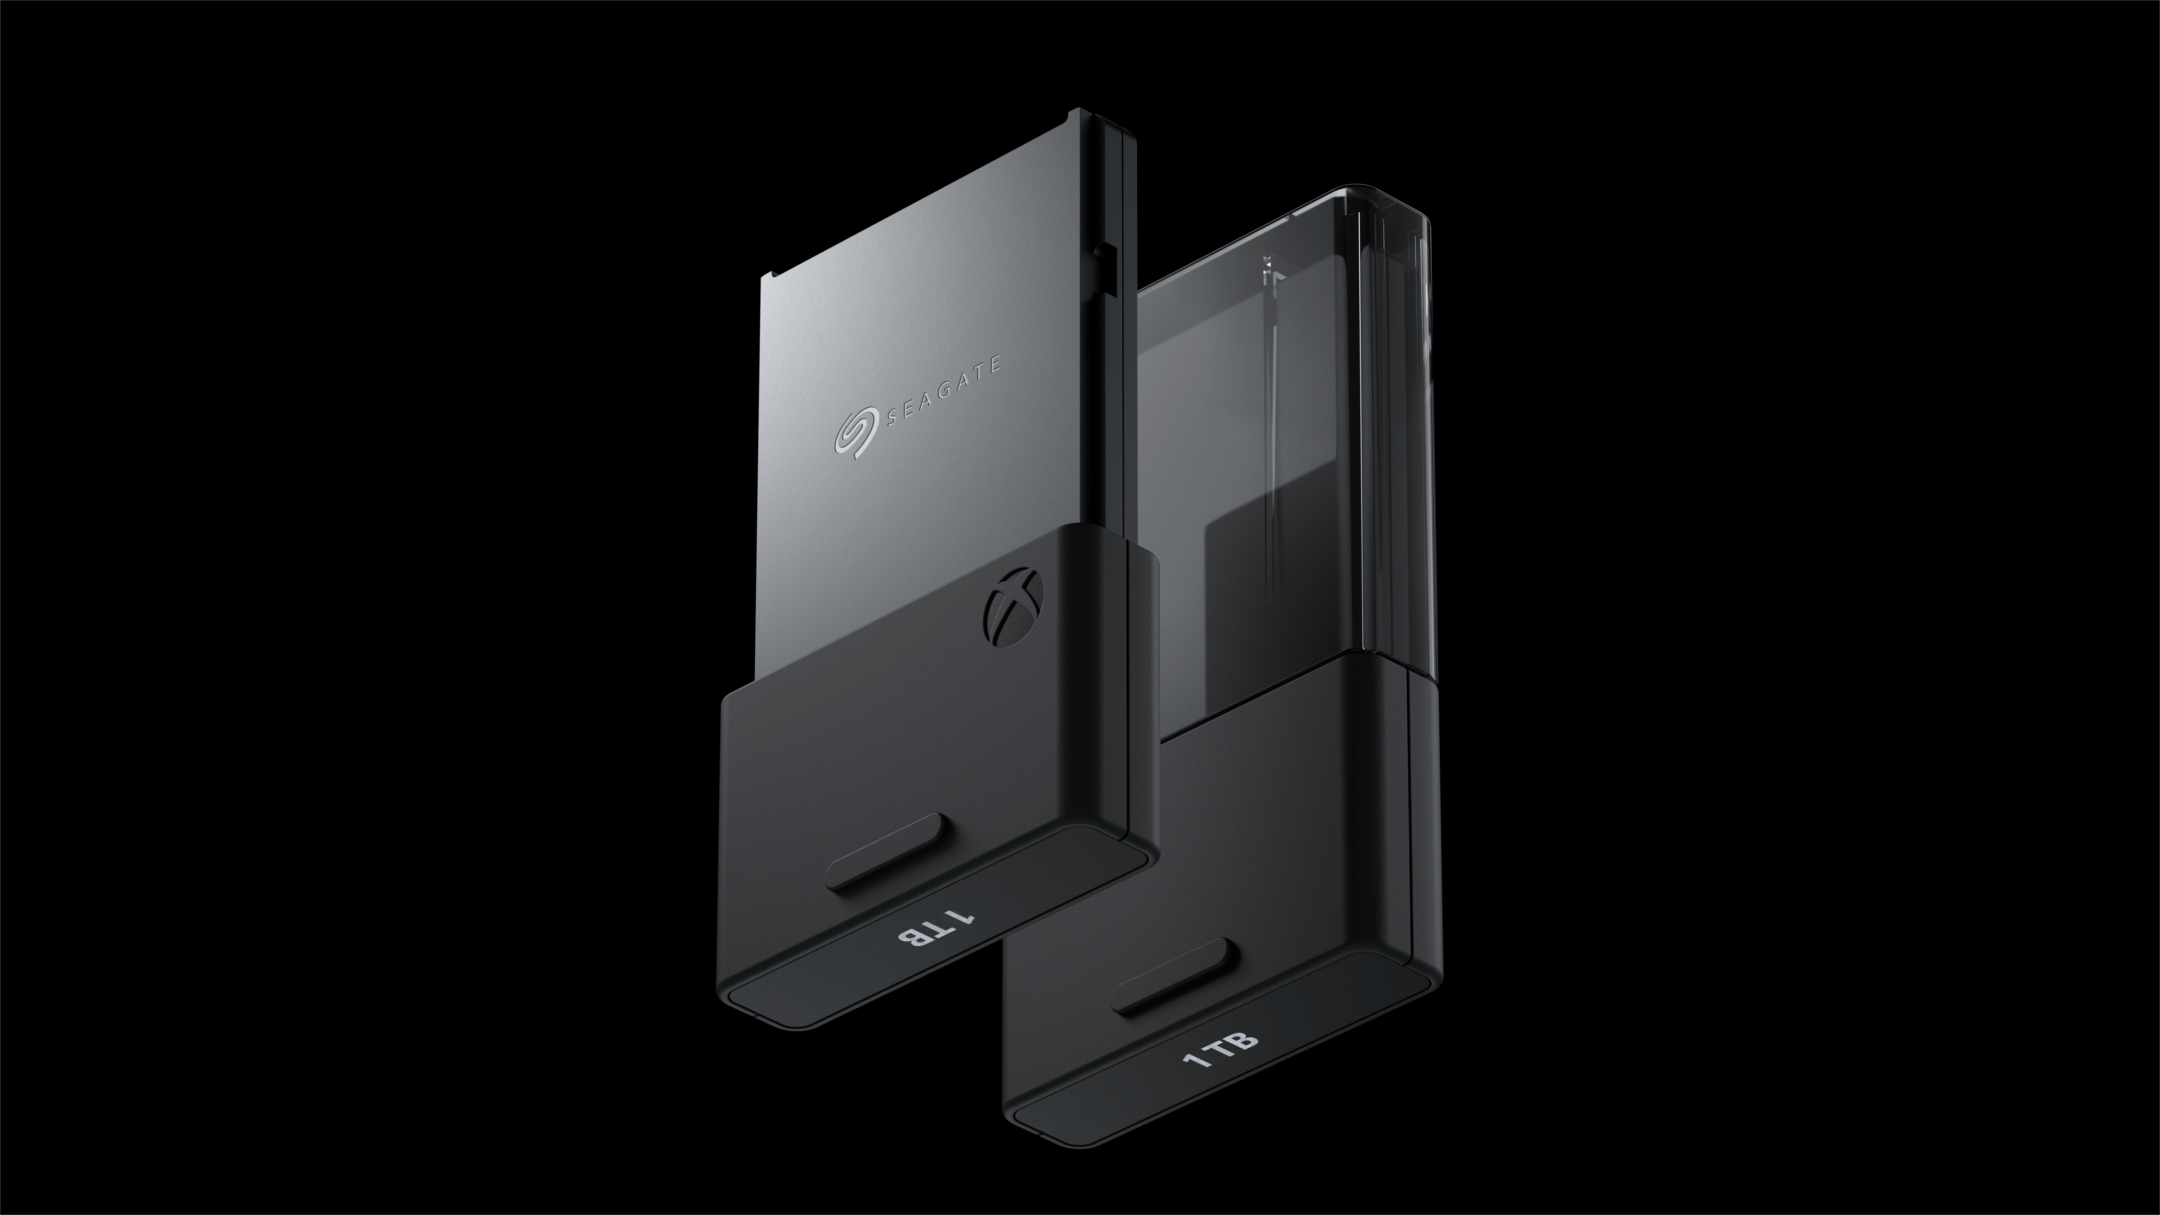 Xbox Series X, S - Les détails sur l'extension de stockage